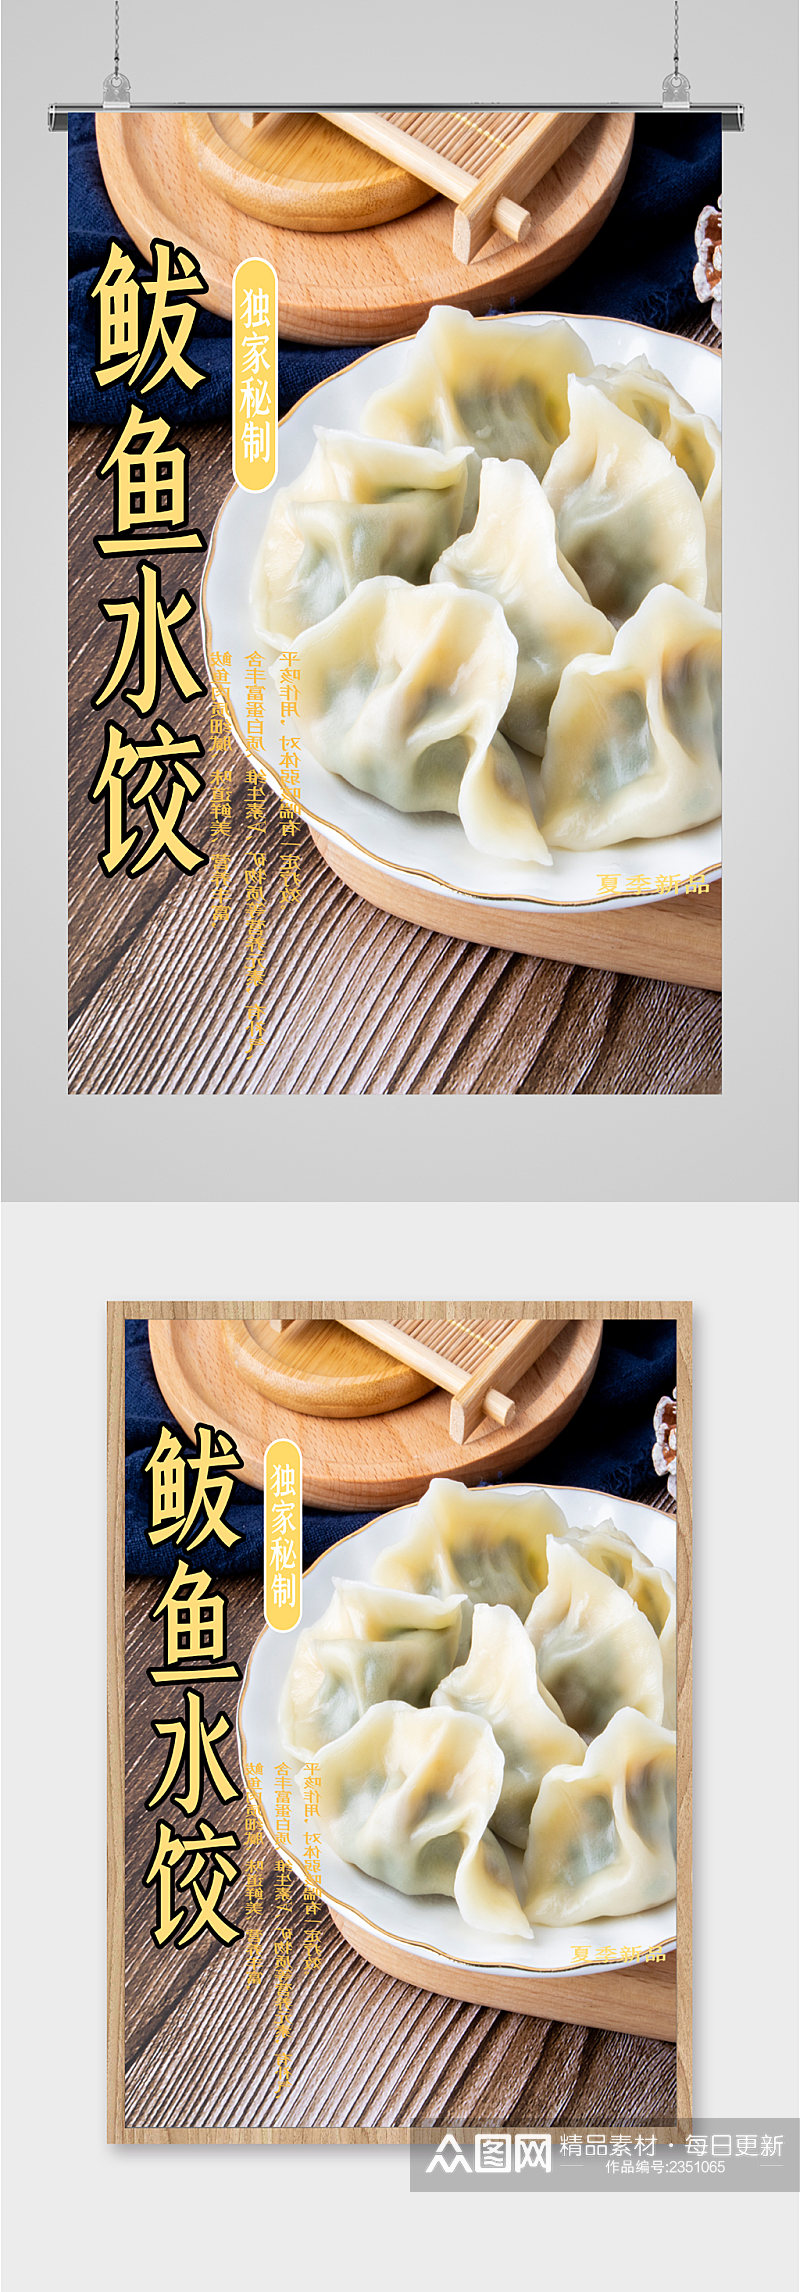 鲅鱼水饺美食海报素材